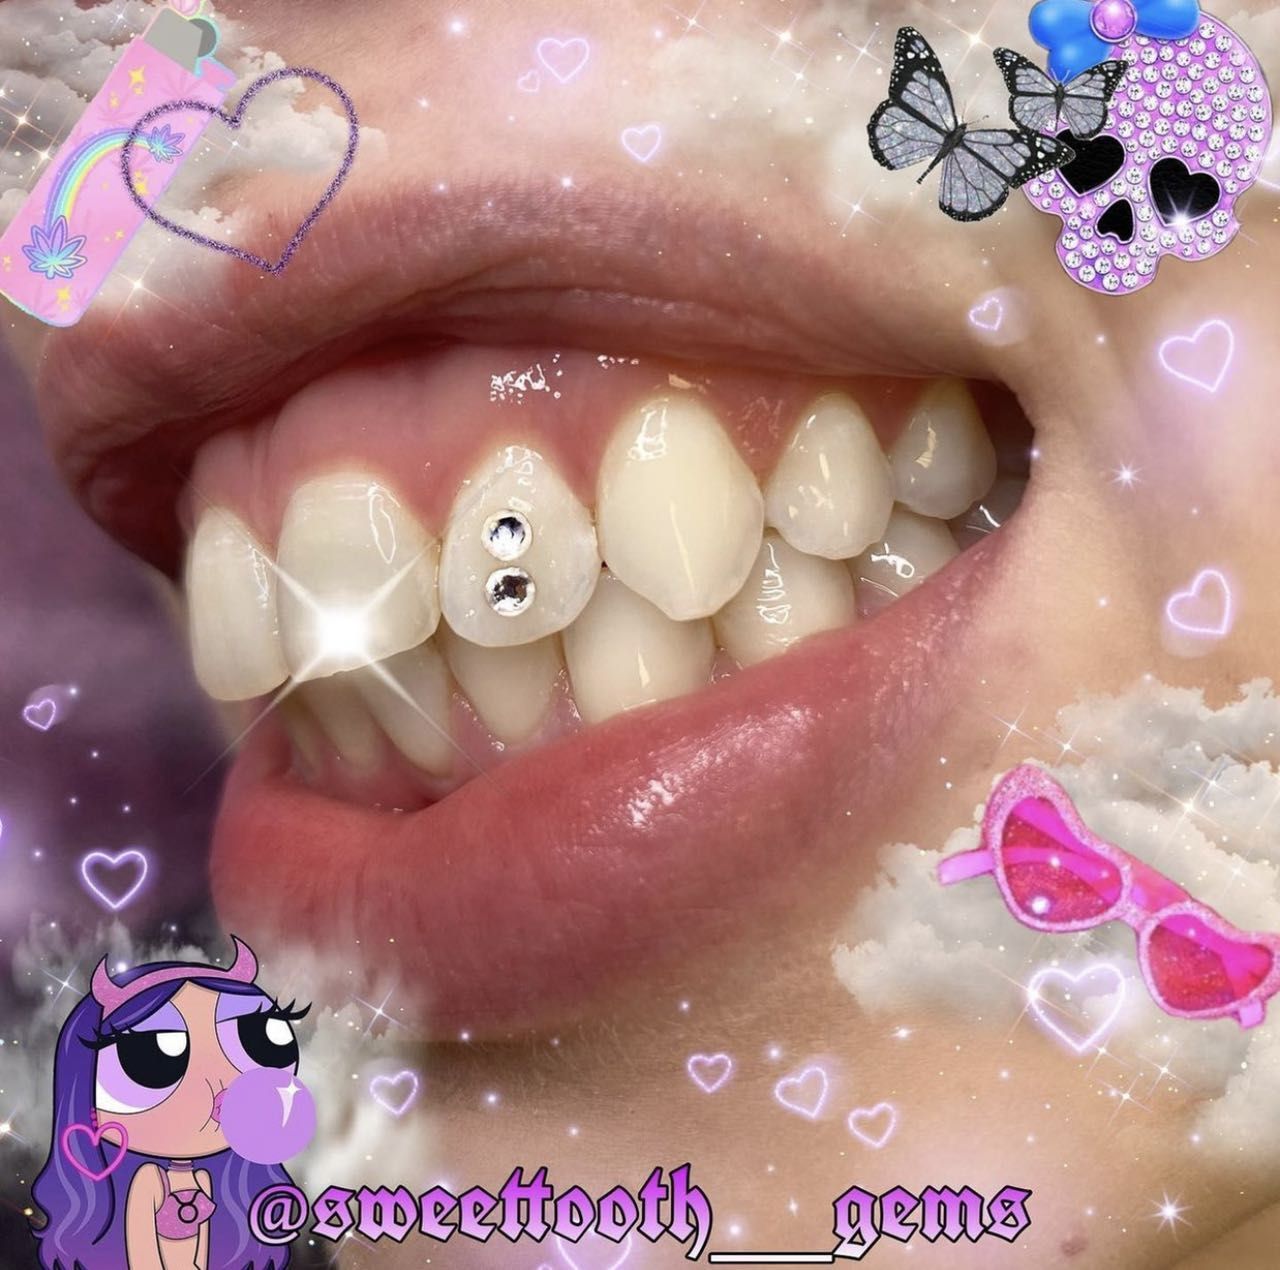 Tooth gem with Raynie portfolio